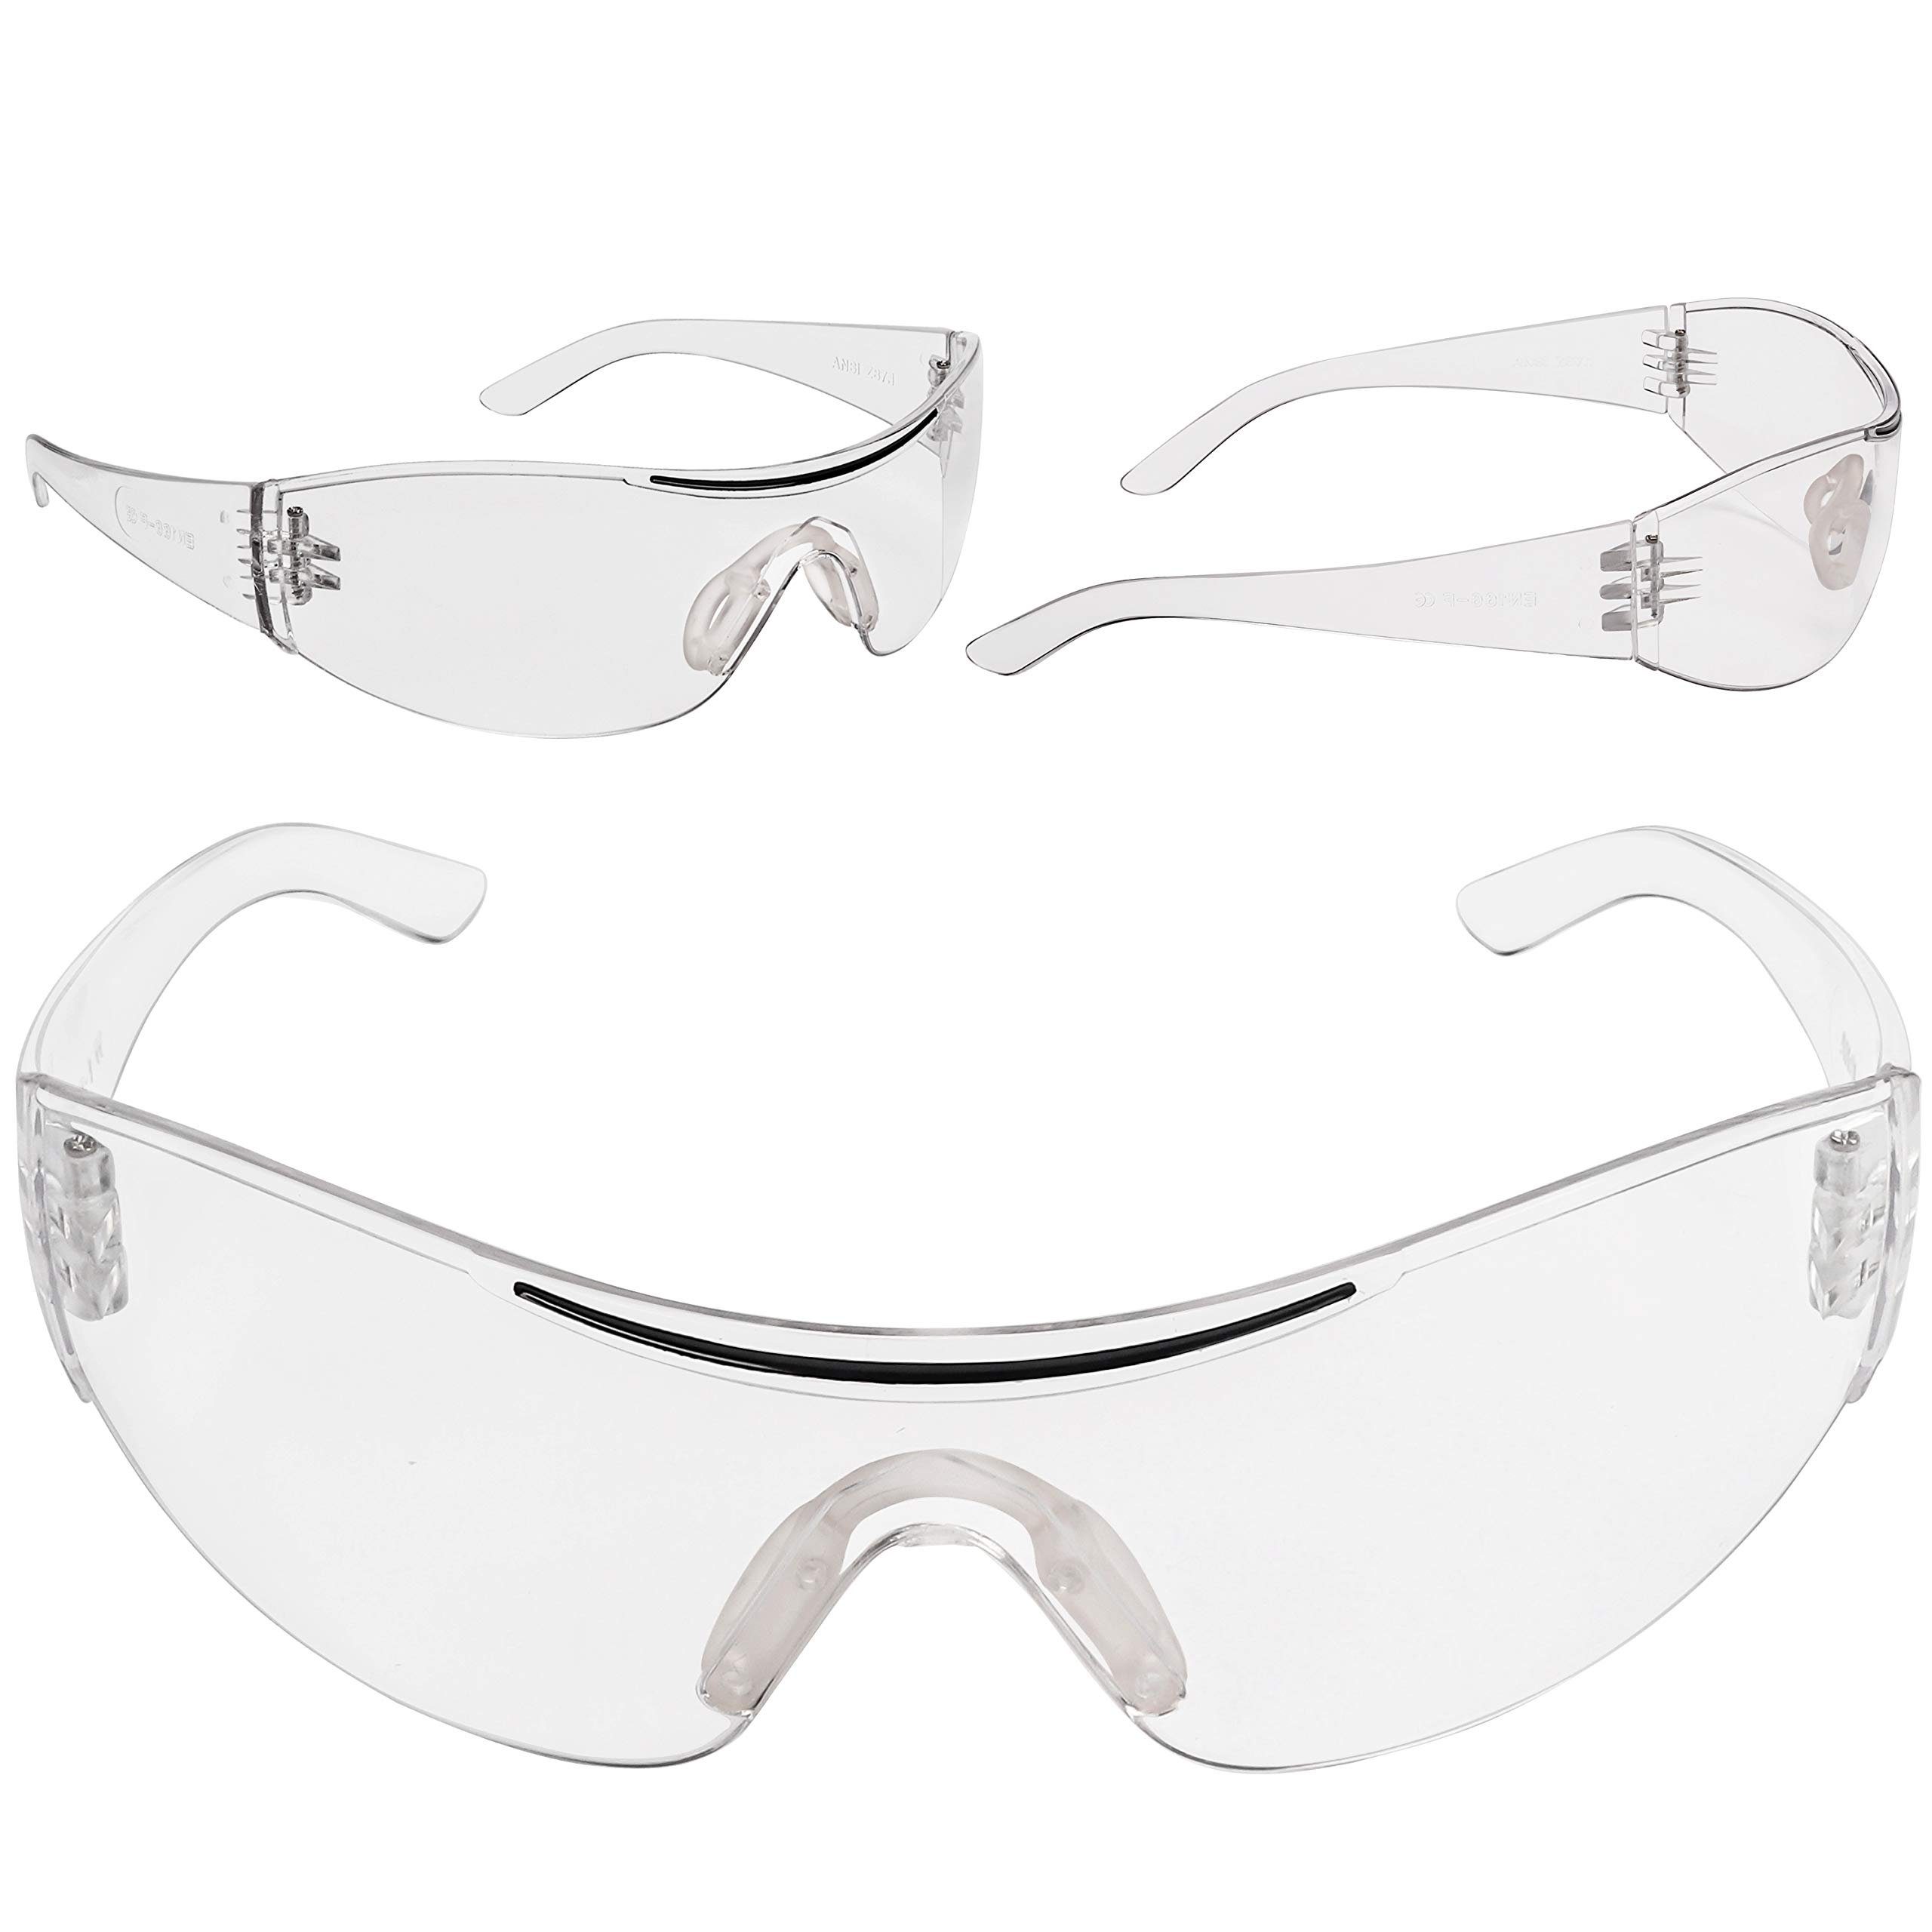 Augenschutz, 24er Pack mit sicheren Augenschutz Schutzbrillen sicheren Arbeitsschutzbrille mit Gummi Schutzbrillen für 24er Kurtzy Gummieinsatz für Pack